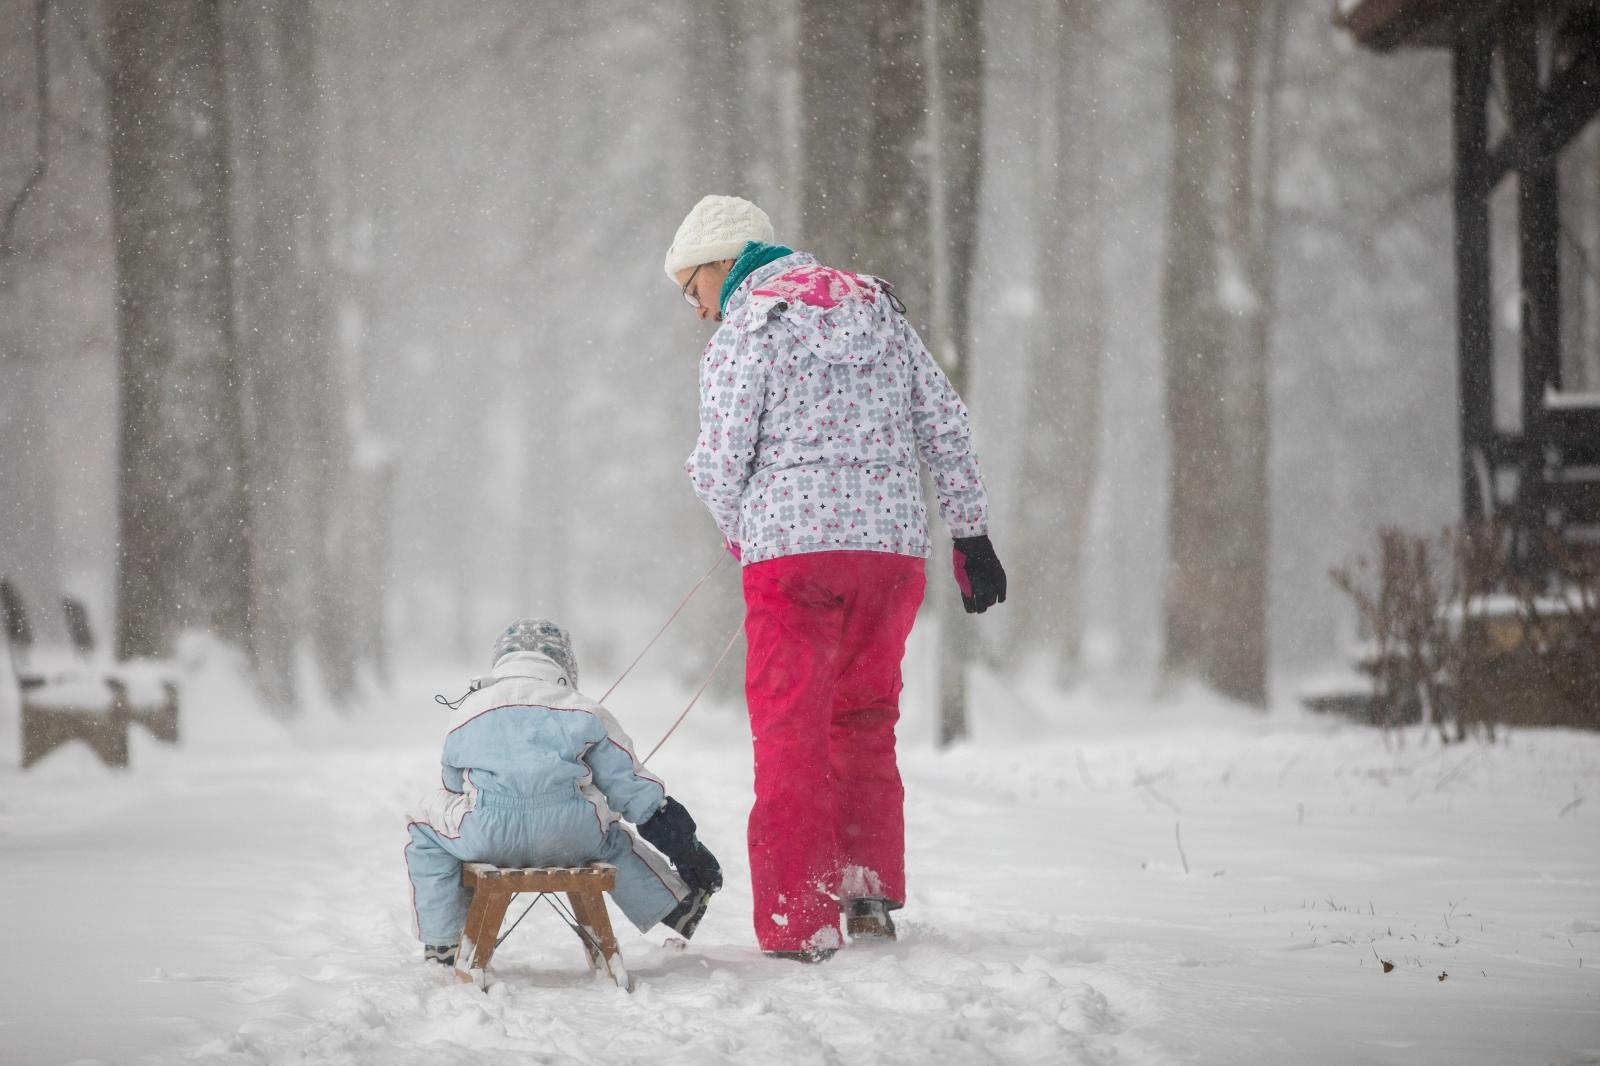 Snijegu su se posebno razveselila djeca./Nel Pavletic/PIXSELL